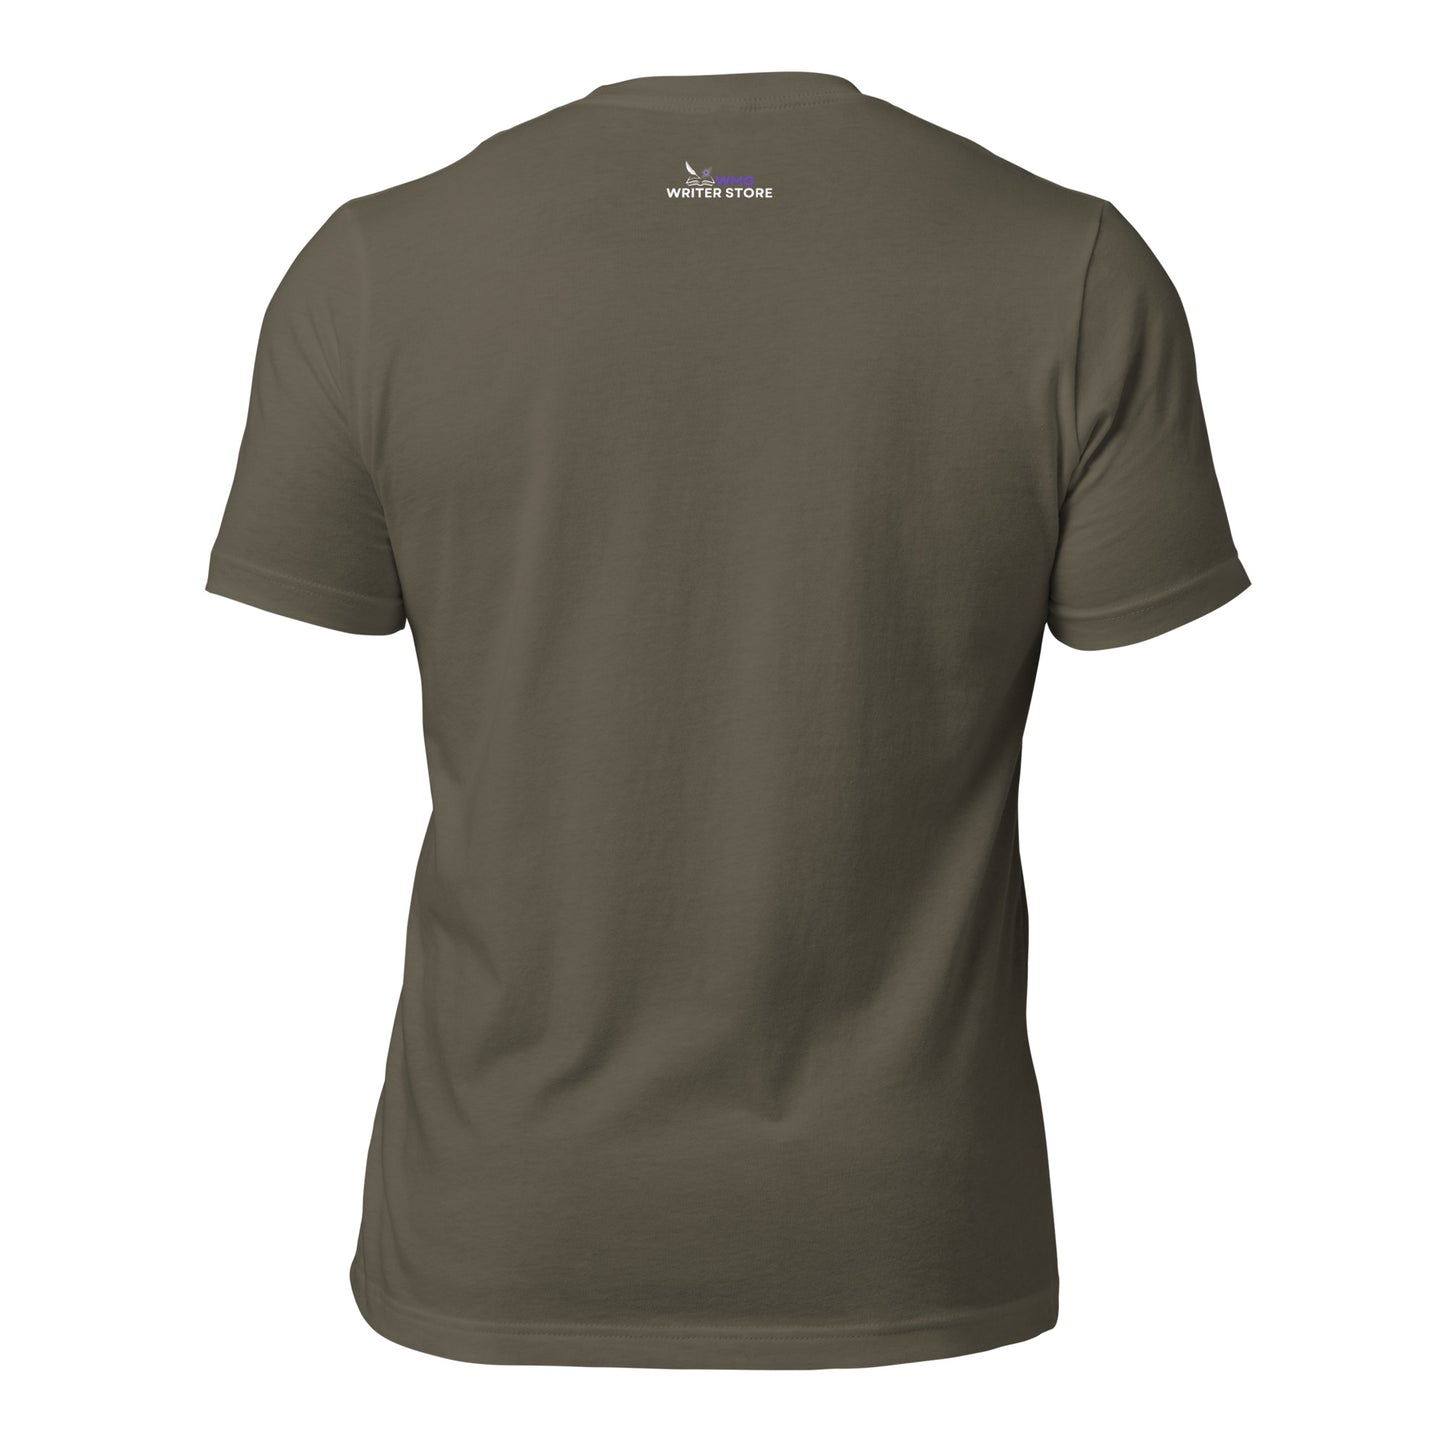 SUPERNOVA Unisex T-Shirt | WMG Writer Store